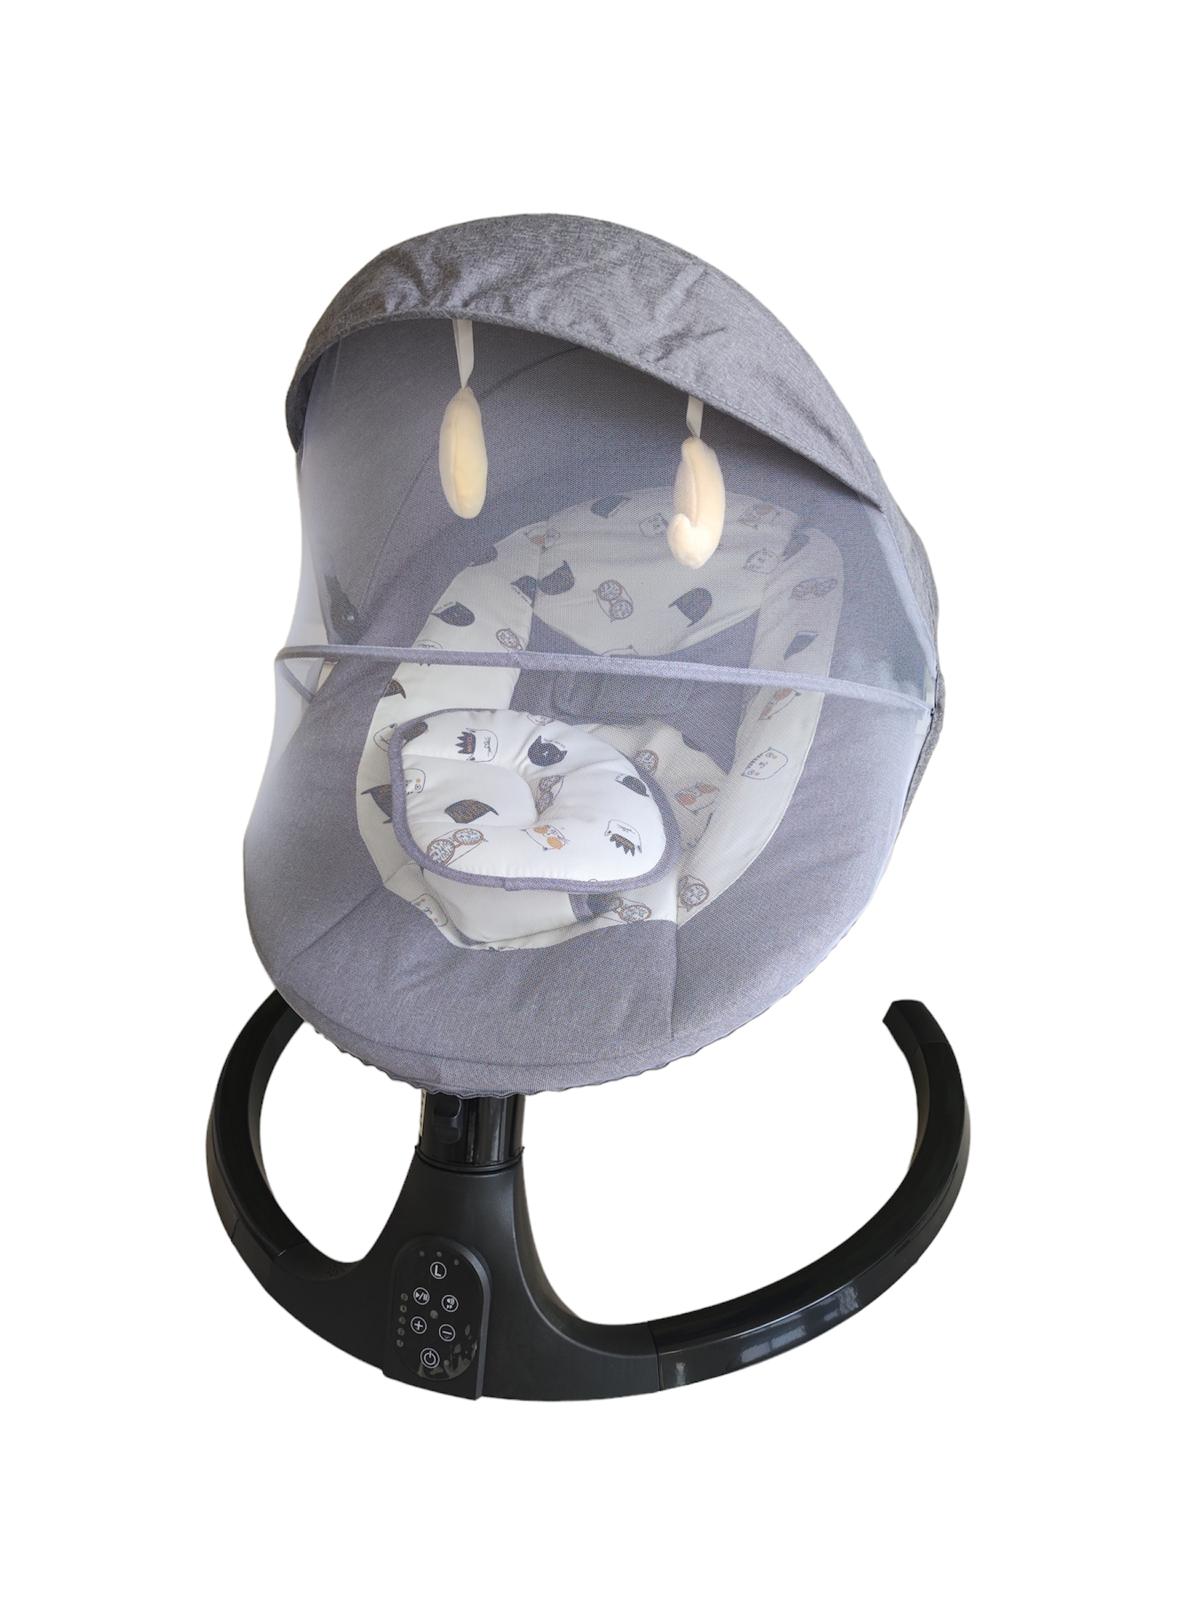 Balansoar electric pentru bebelusi, cu acoperis rabatabil si plasa de protectie, telecomanda, jucarii si sunete, A4